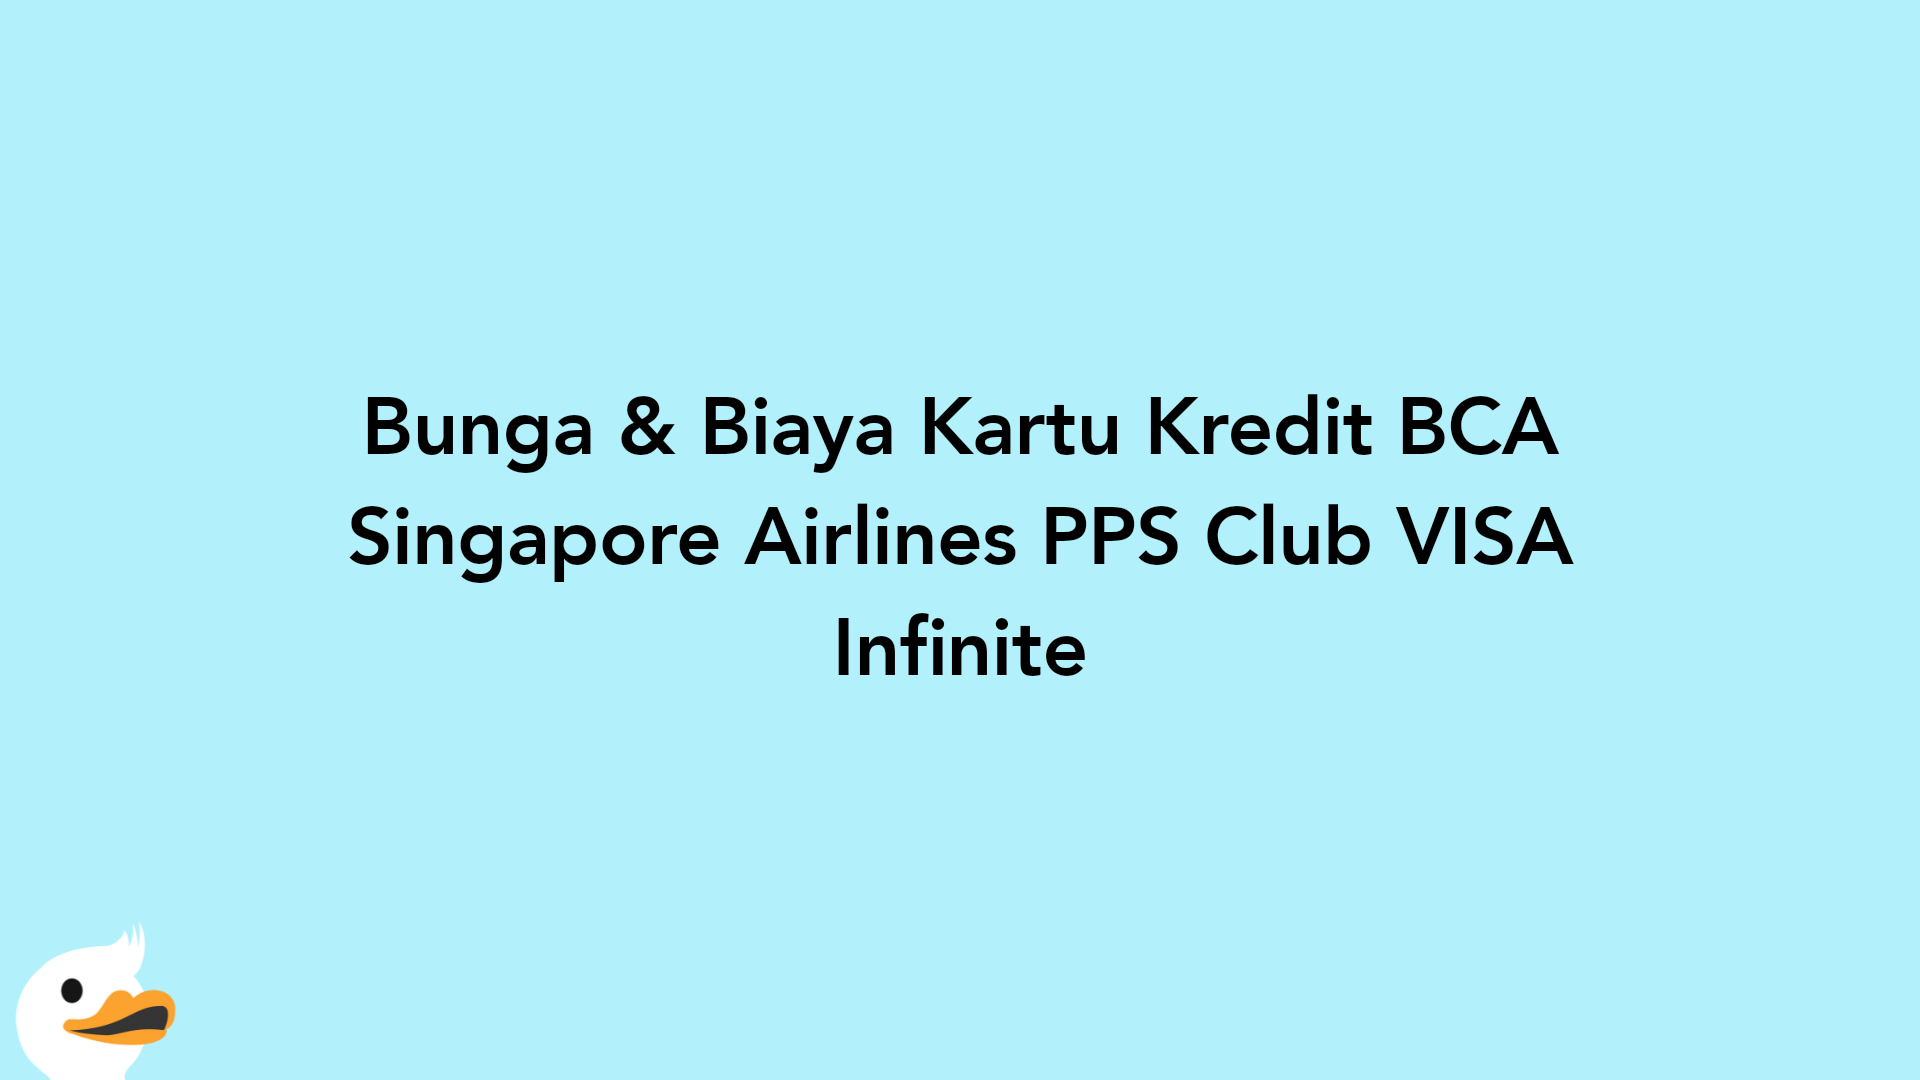 Bunga & Biaya Kartu Kredit BCA Singapore Airlines PPS Club VISA Infinite